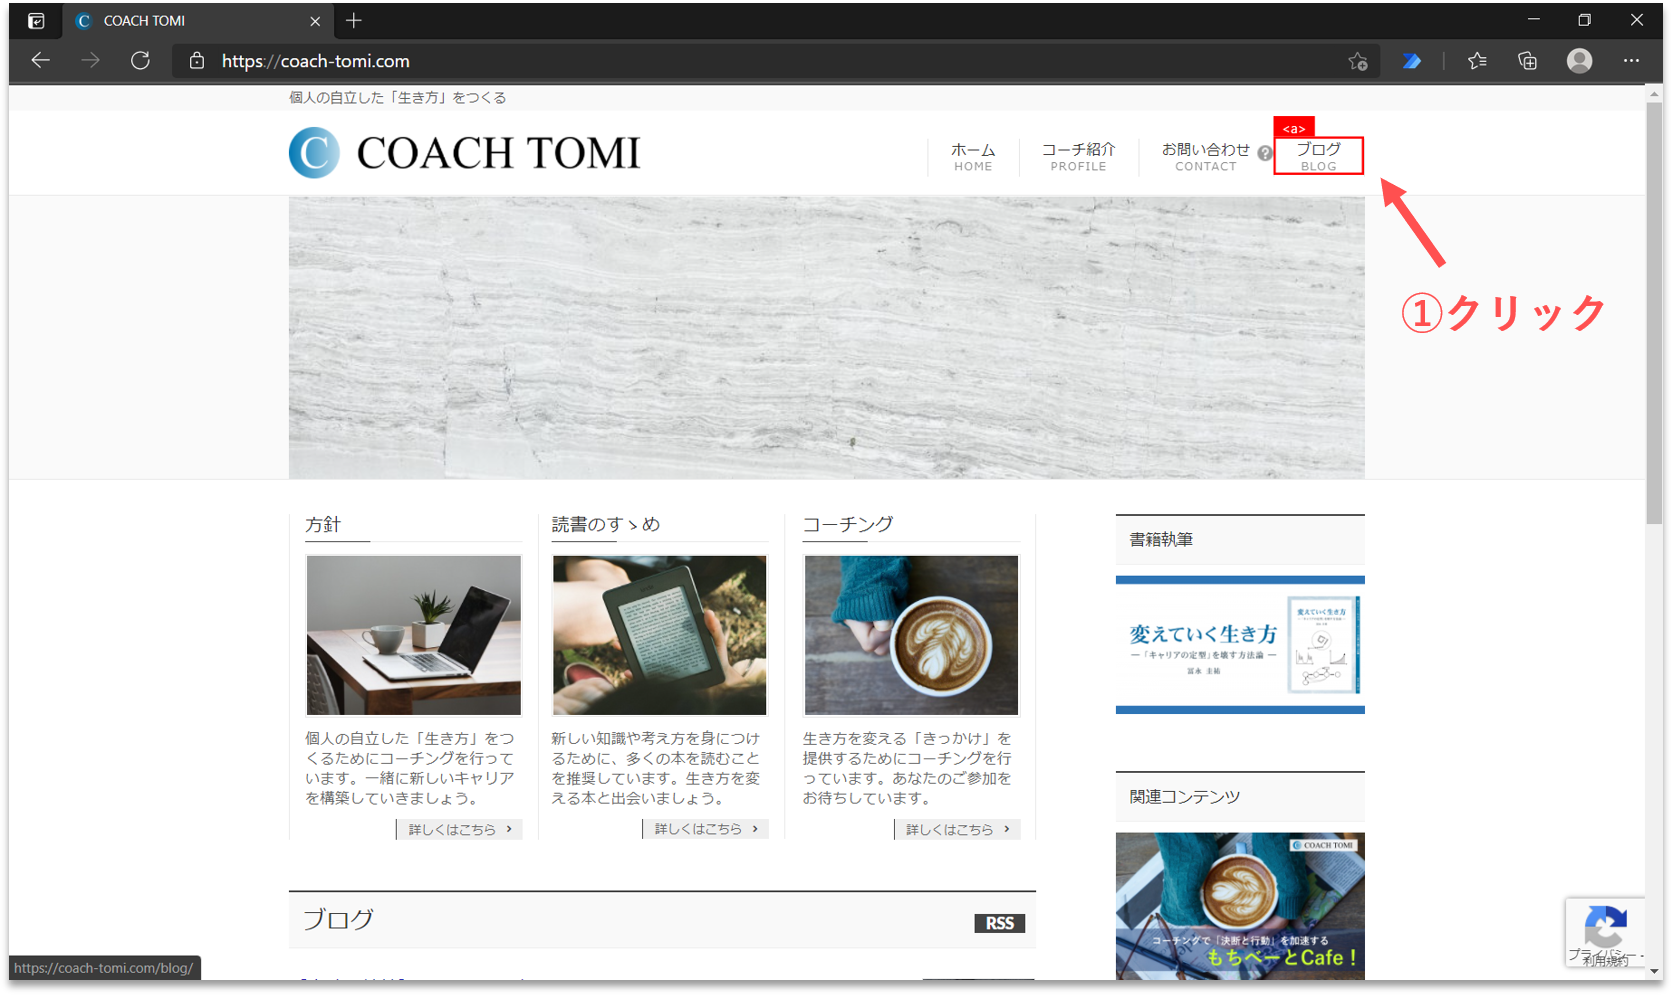 click blog menu